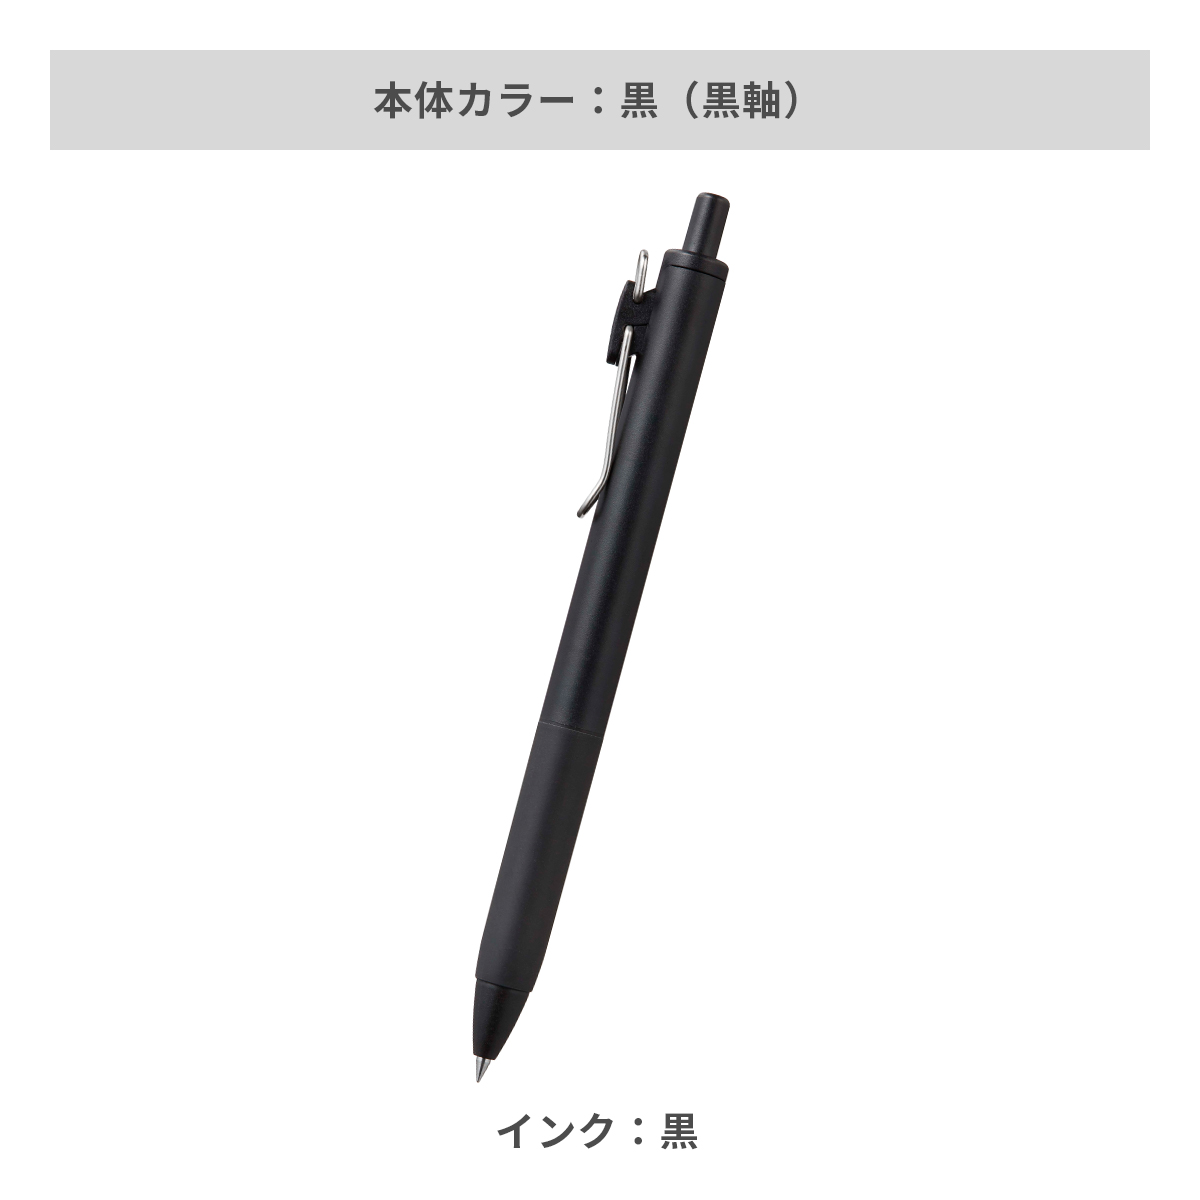 三菱鉛筆 ユニボールワン 0.5mm【名入れボールペン / パッド印刷】 画像4